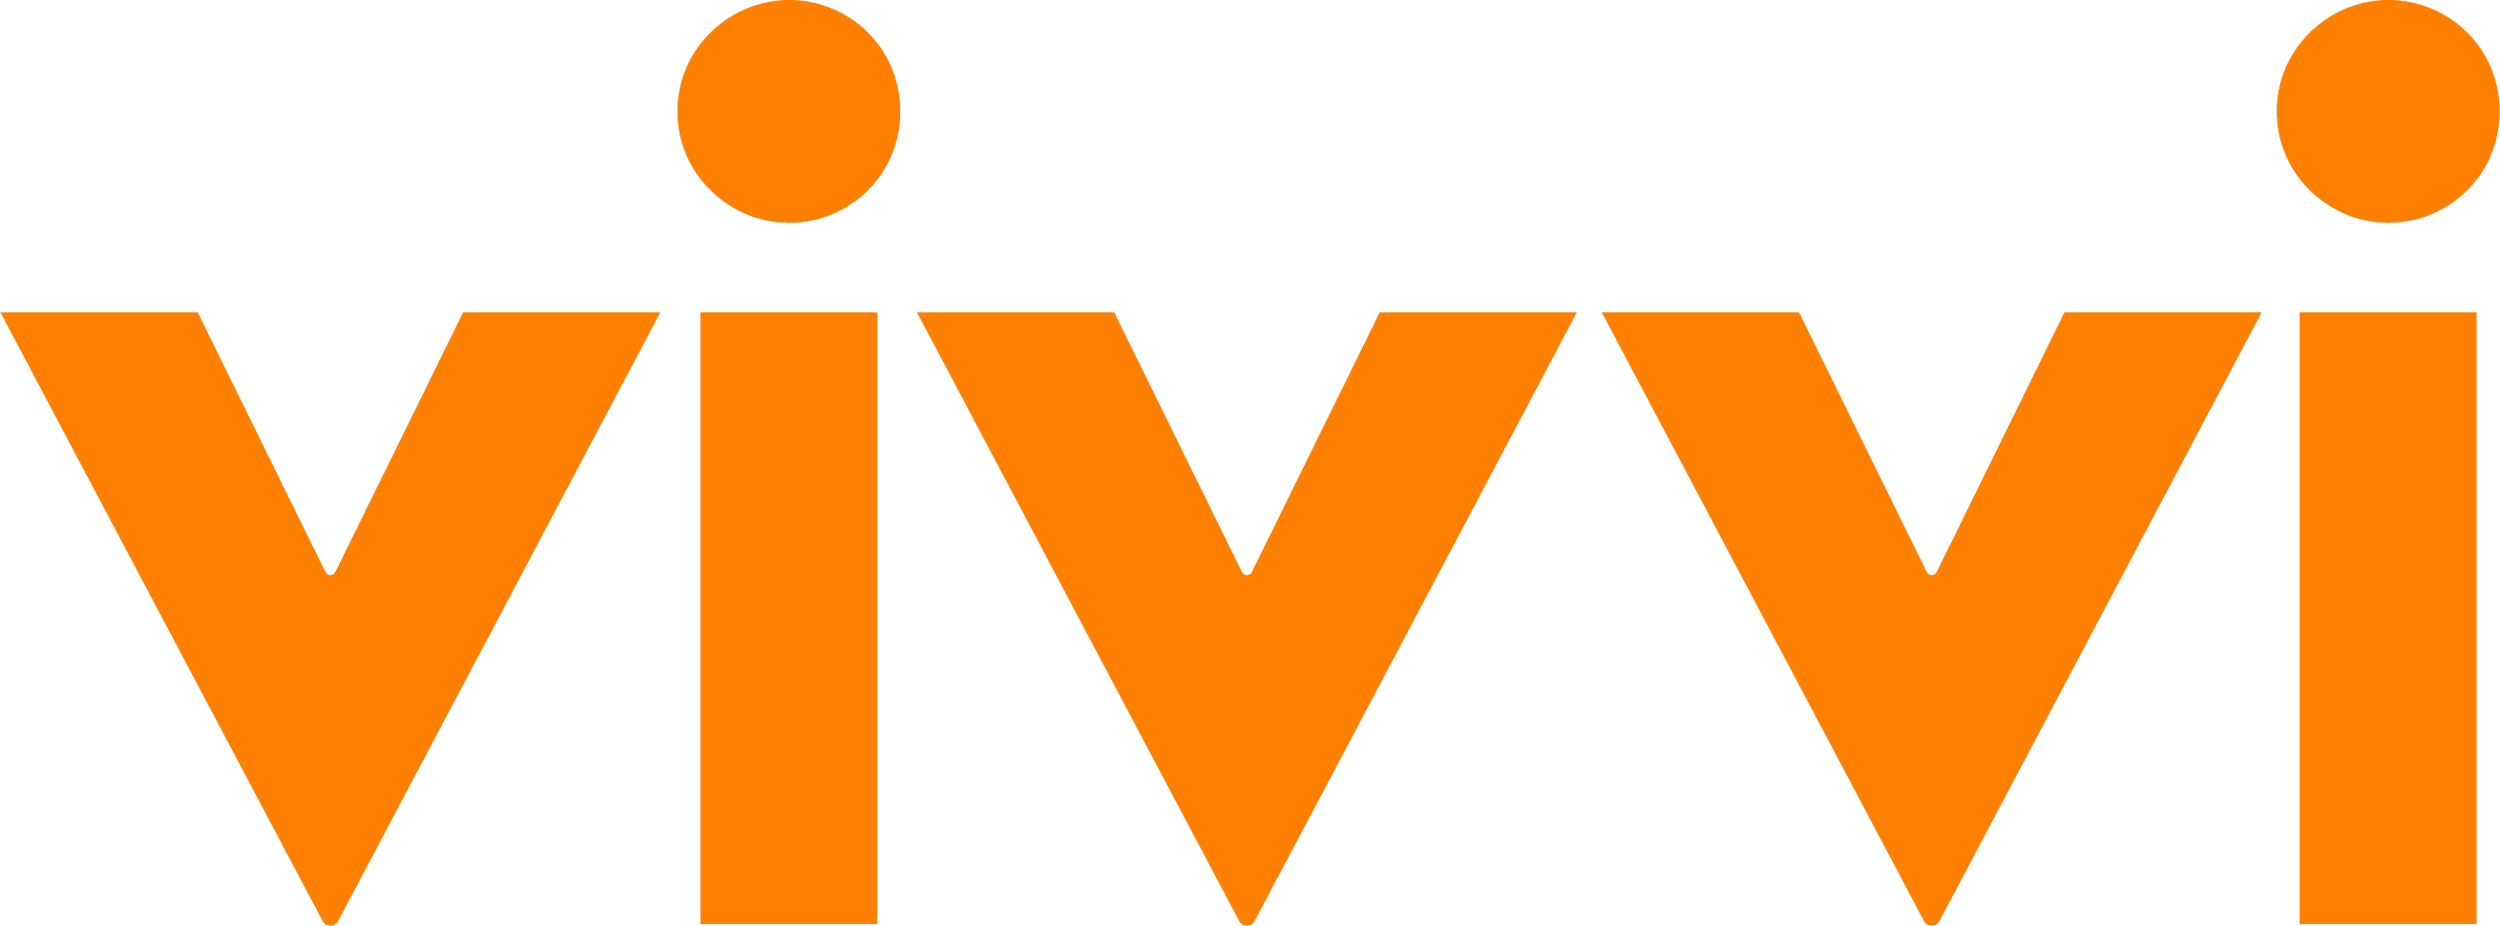 Vivvi_Regular_1C_Orange.png